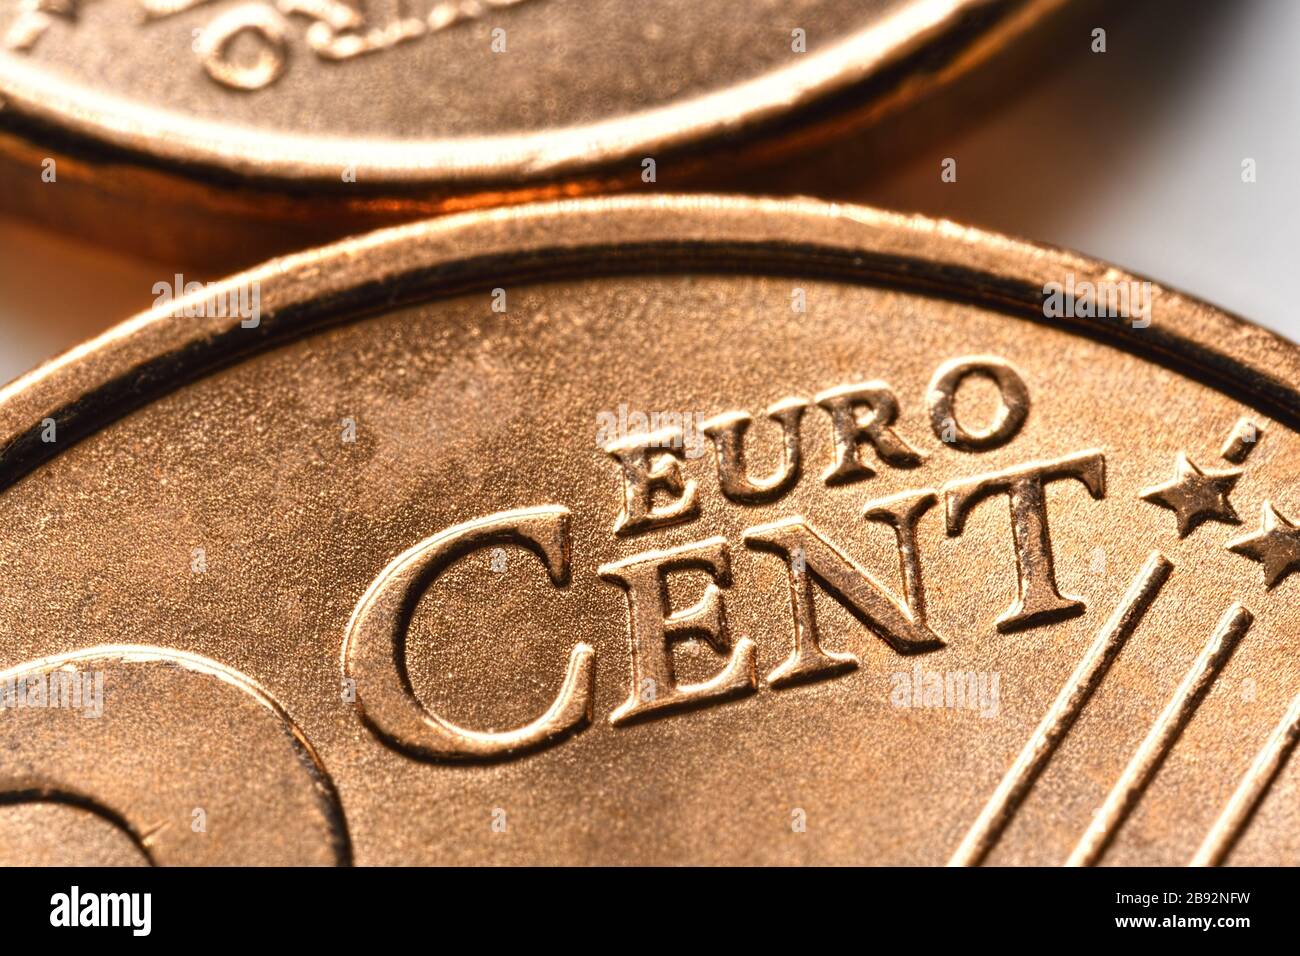 Primo piano delle monete da cent, foto simbolica per la prevista abolizione delle monete da 1 e 2 cent, Nahaufnahme von Centmünzen, Symbolfoto für die gebante Abscha Foto Stock